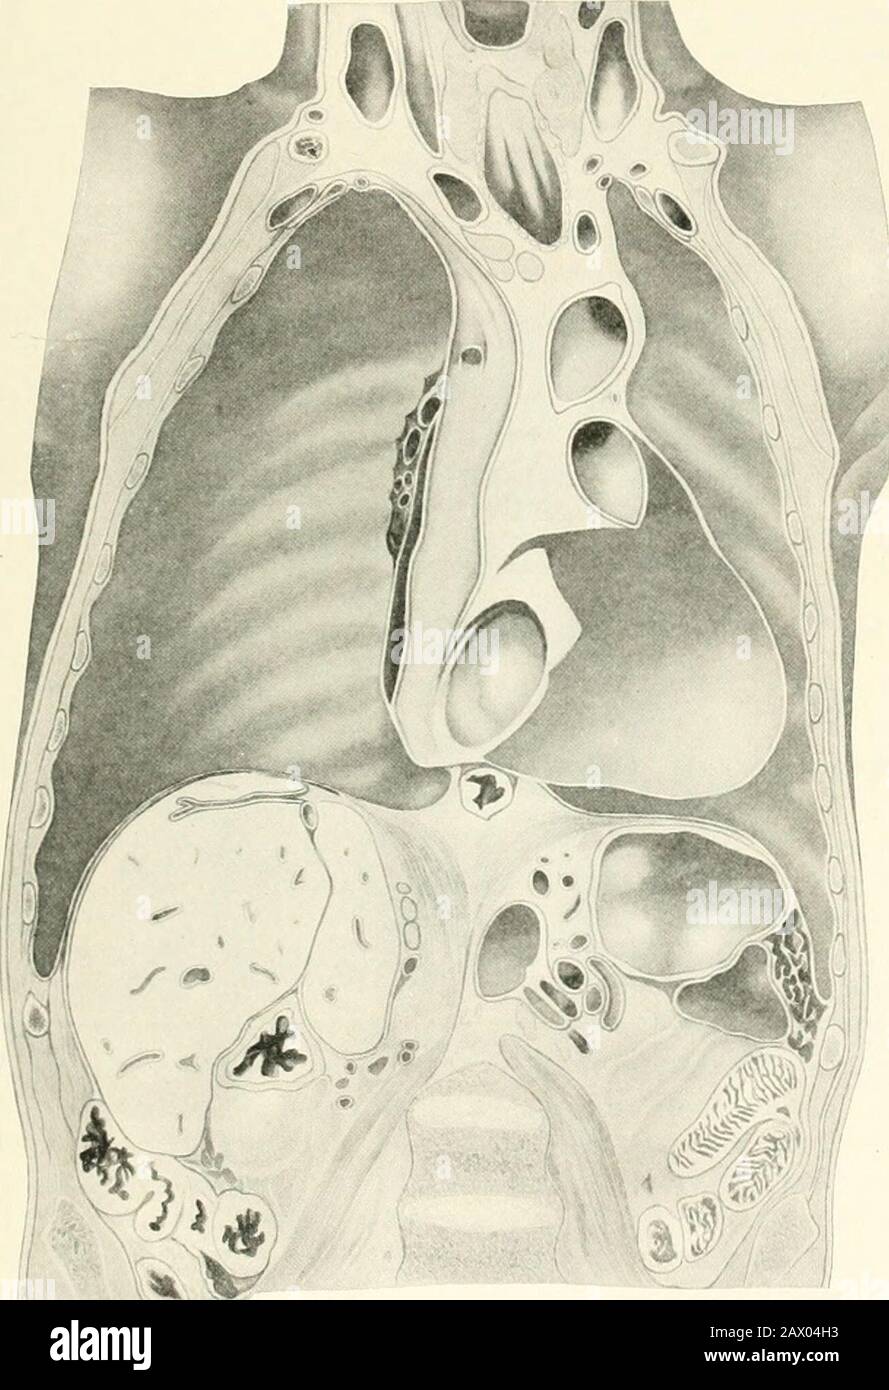 Tuberculosis clínica . I.-ig  55 —Posición de los órganos abdominales e intratorácicos en la edad de 36 años. Cotiiiiare con Figs. 54 y 56. (Mehnert.). Fig. 56.—Posición de la diaplnagm y de los órganos abdominales y aeic intialhoi en la edad de 11 años. Comparar con Figs. 54 y 55. (Mehnert.) Foto de stock